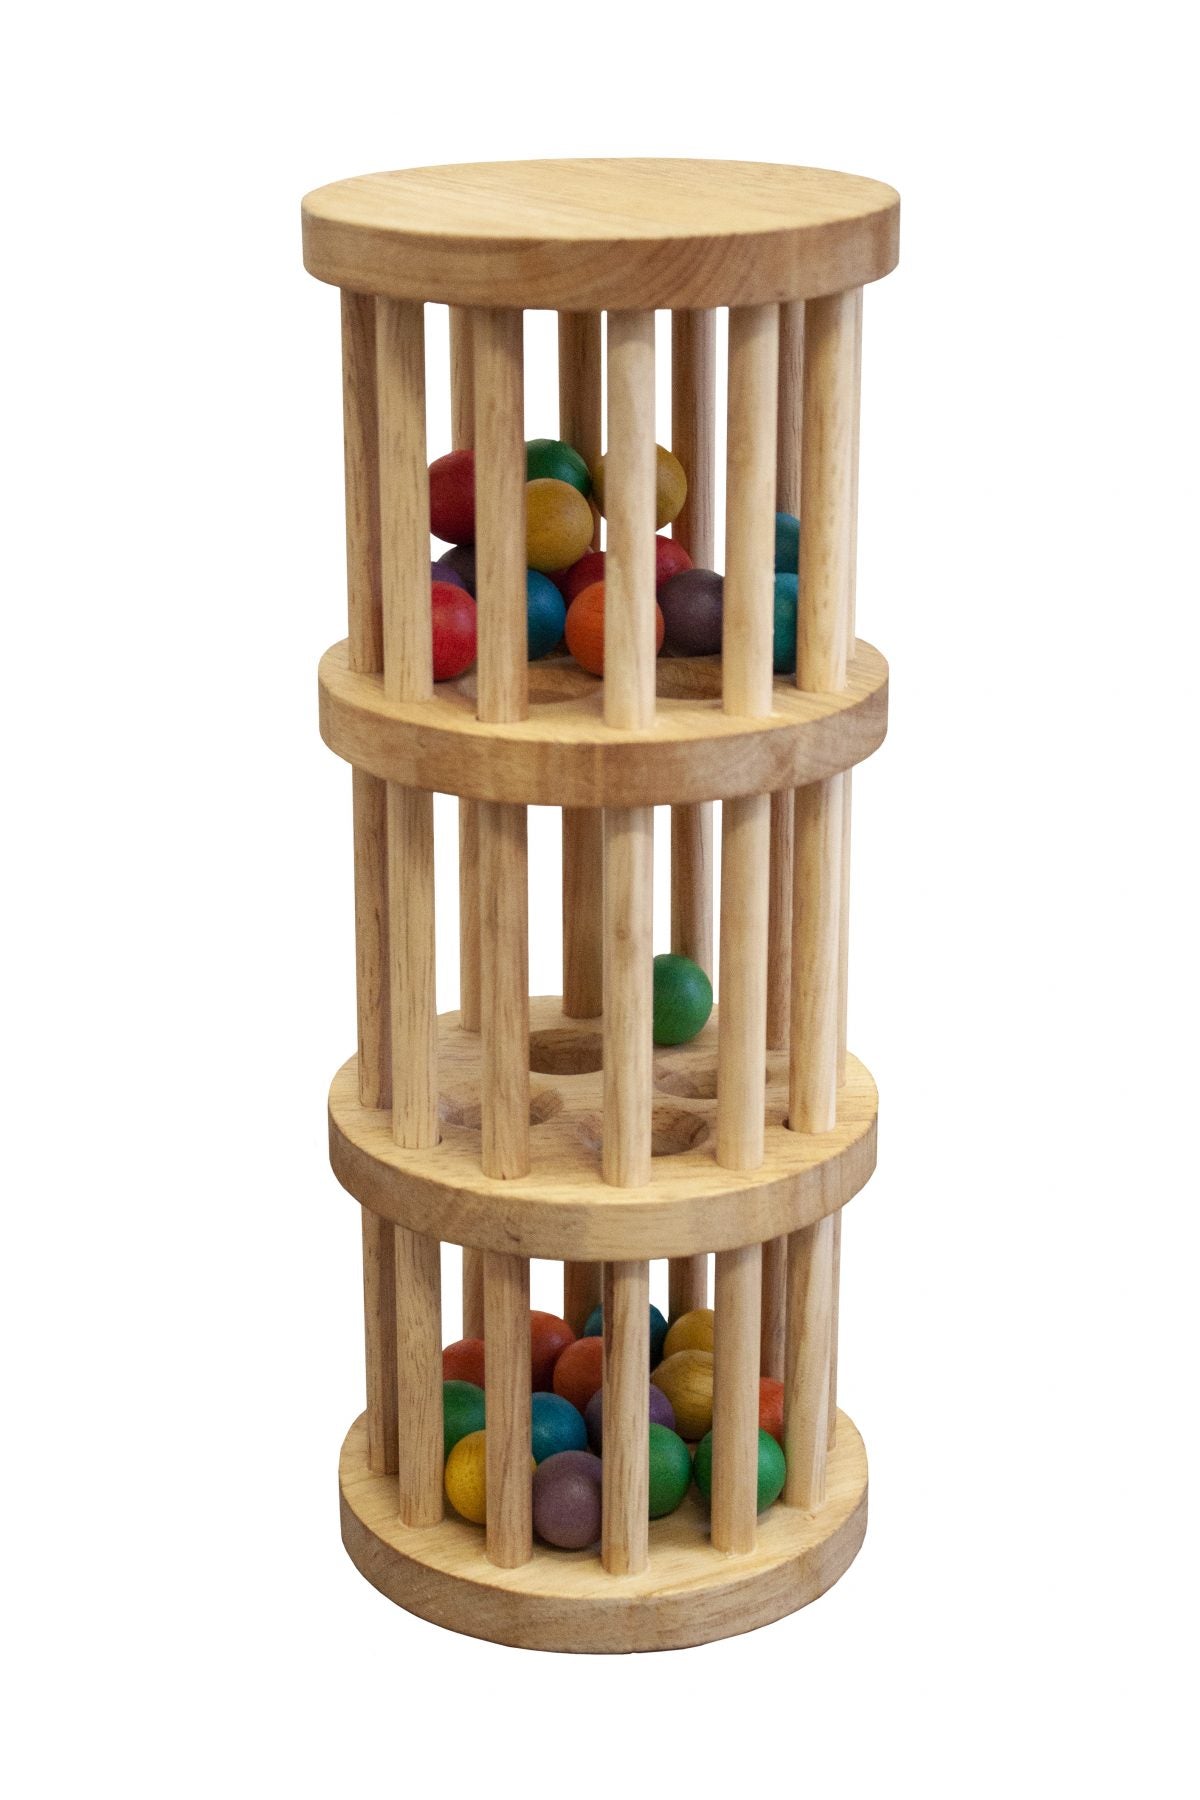 Wooden Gravity Ball Cascade Toy - ToylandEU